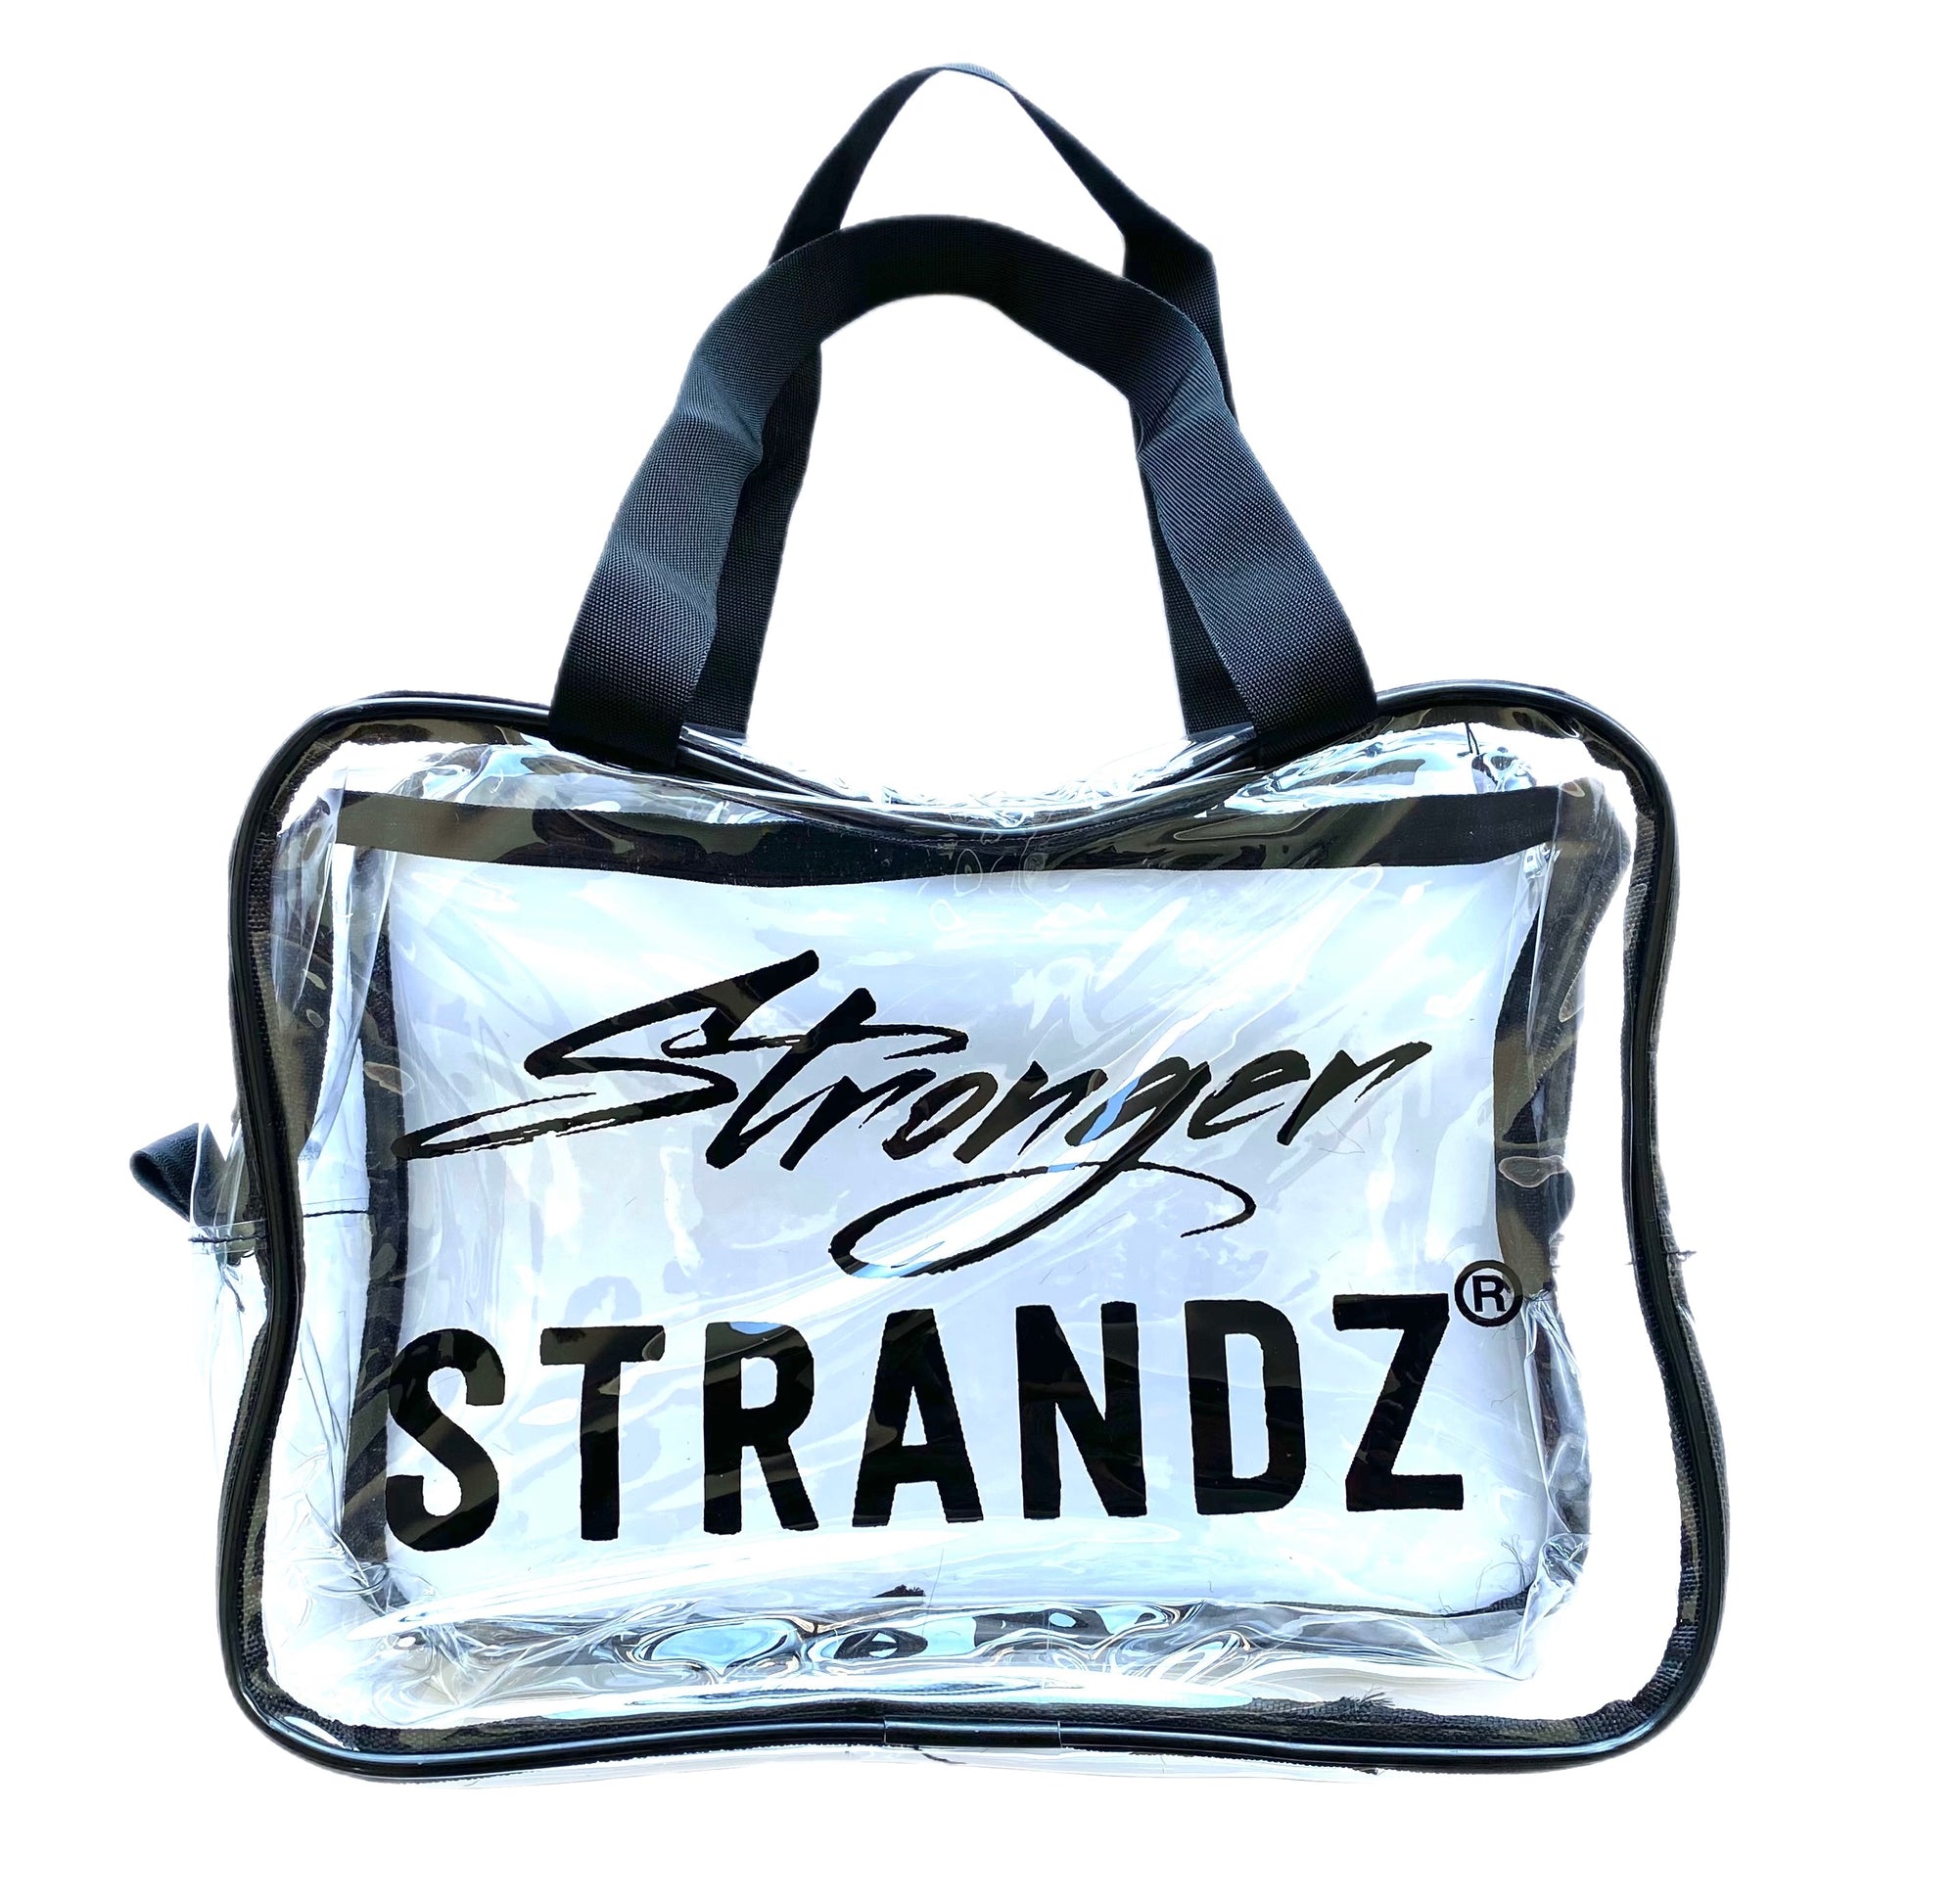 Stronger StrandZ Hair Care Travel Bag